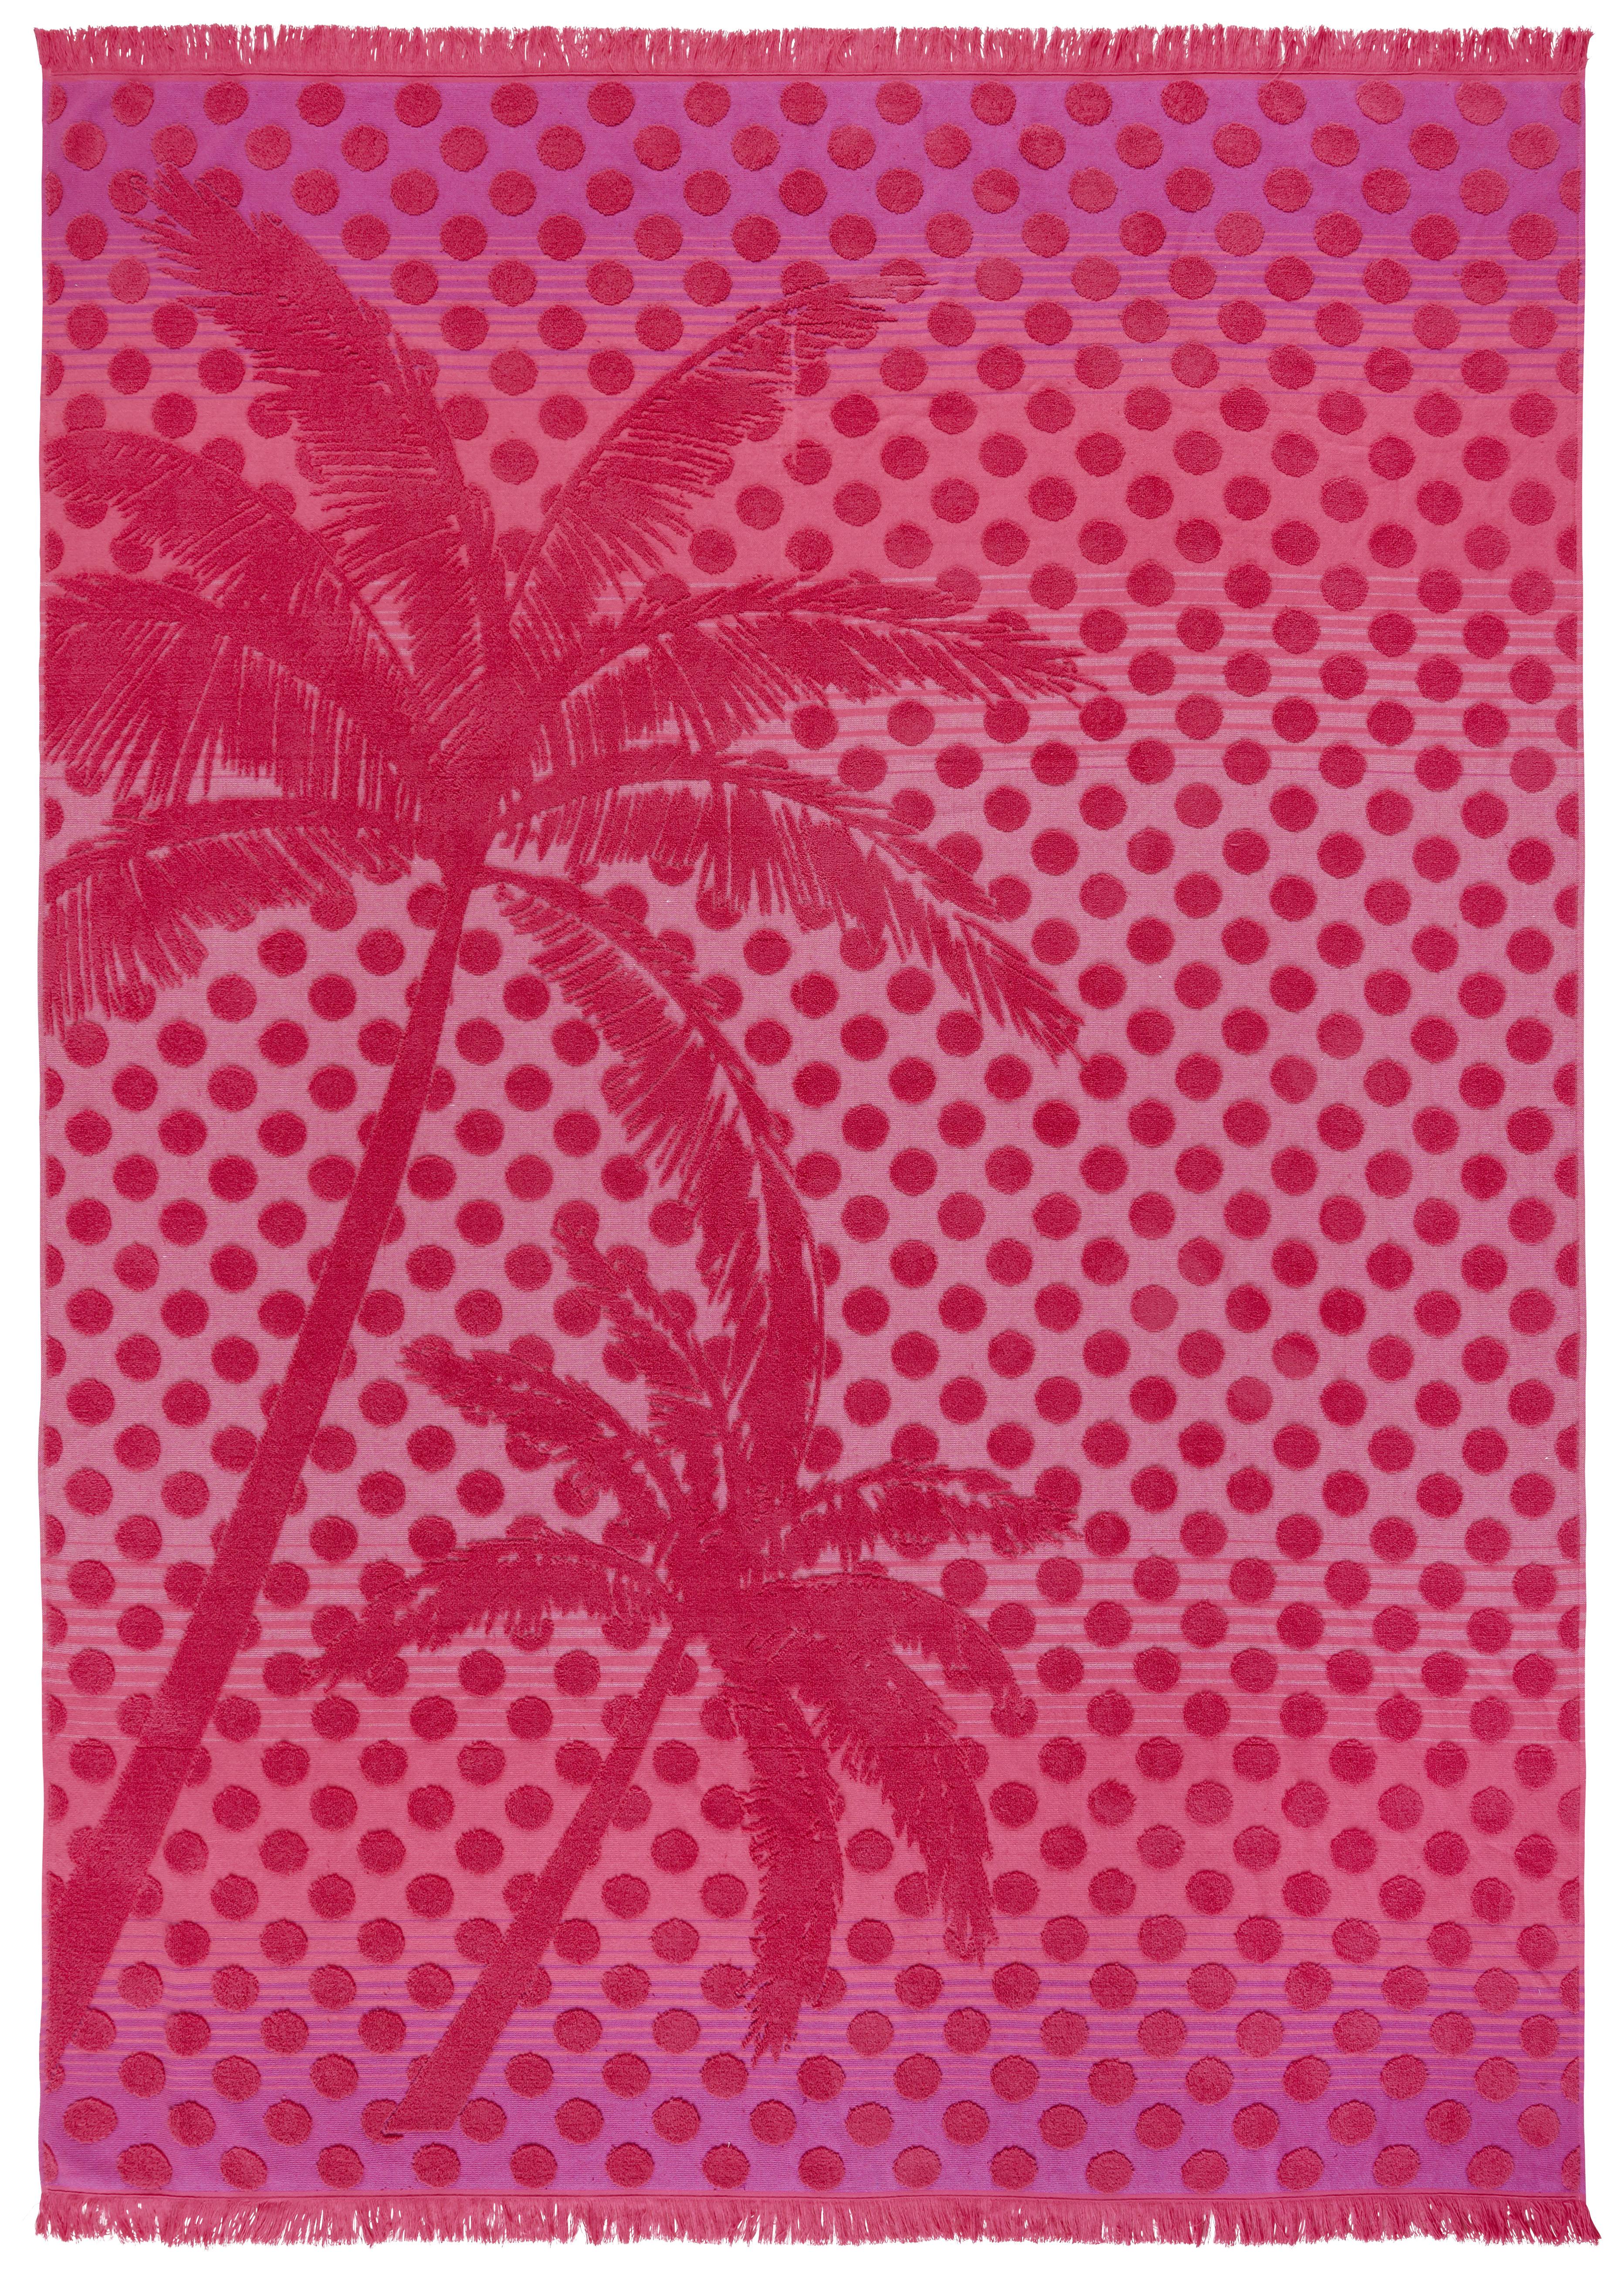 Osuška Na Pláž Noel, 140/200 Cm - pink, textil (140/200cm) - Modern Living